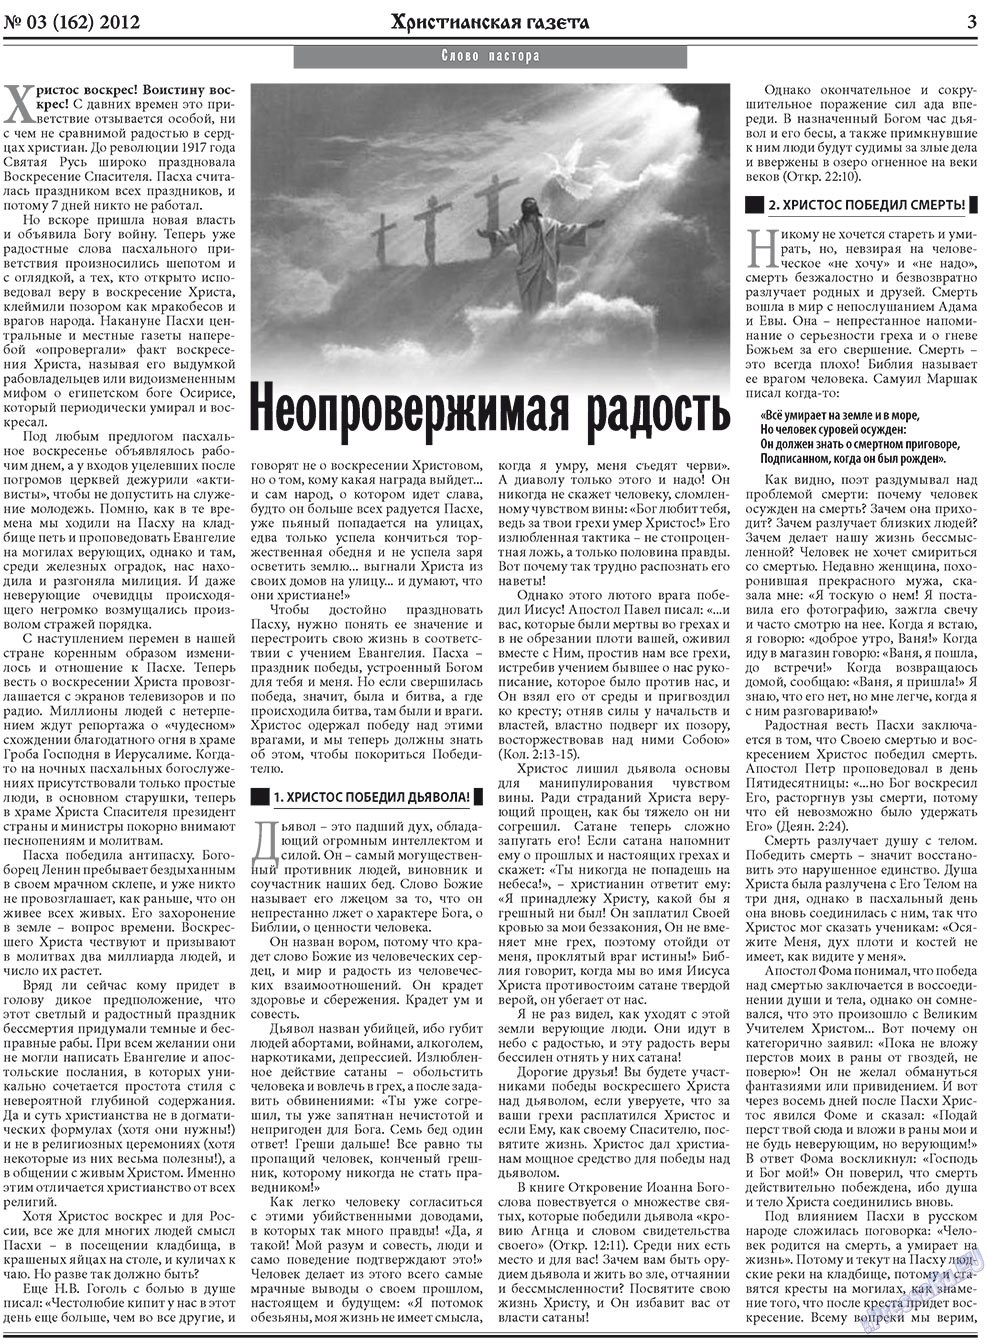 Христианская газета (газета). 2012 год, номер 3, стр. 3